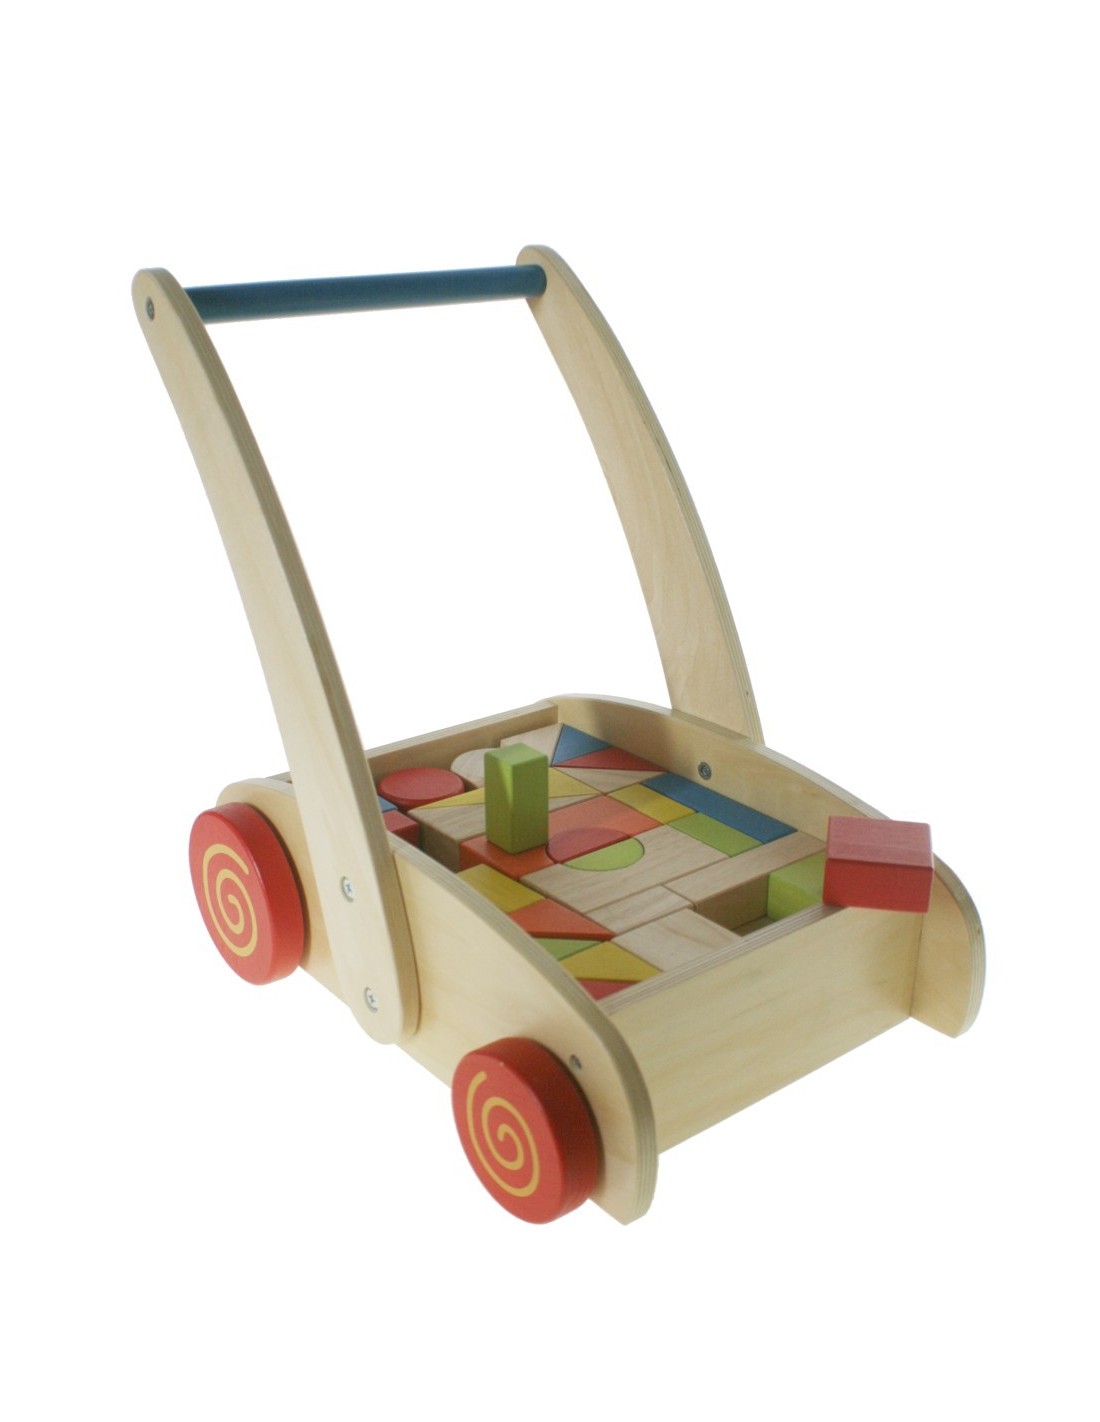 Chariot en bois pour garçons, jouet d'apprentissage précoce